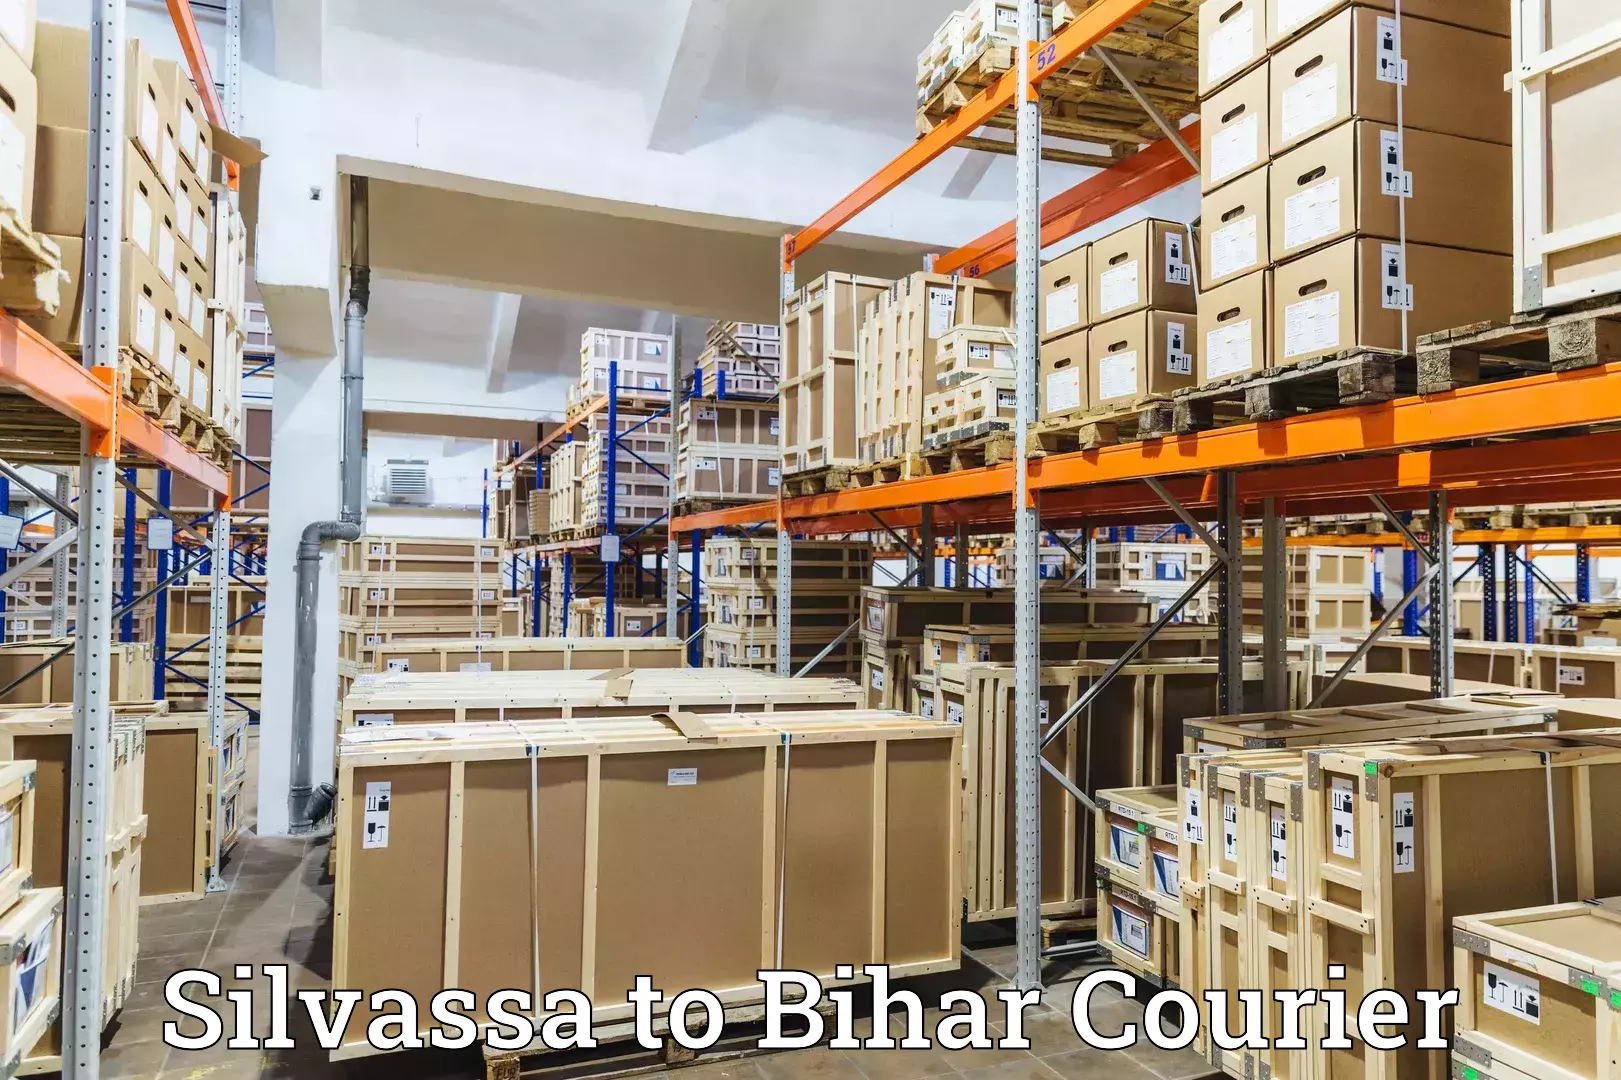 Premium courier solutions Silvassa to Alamnagar